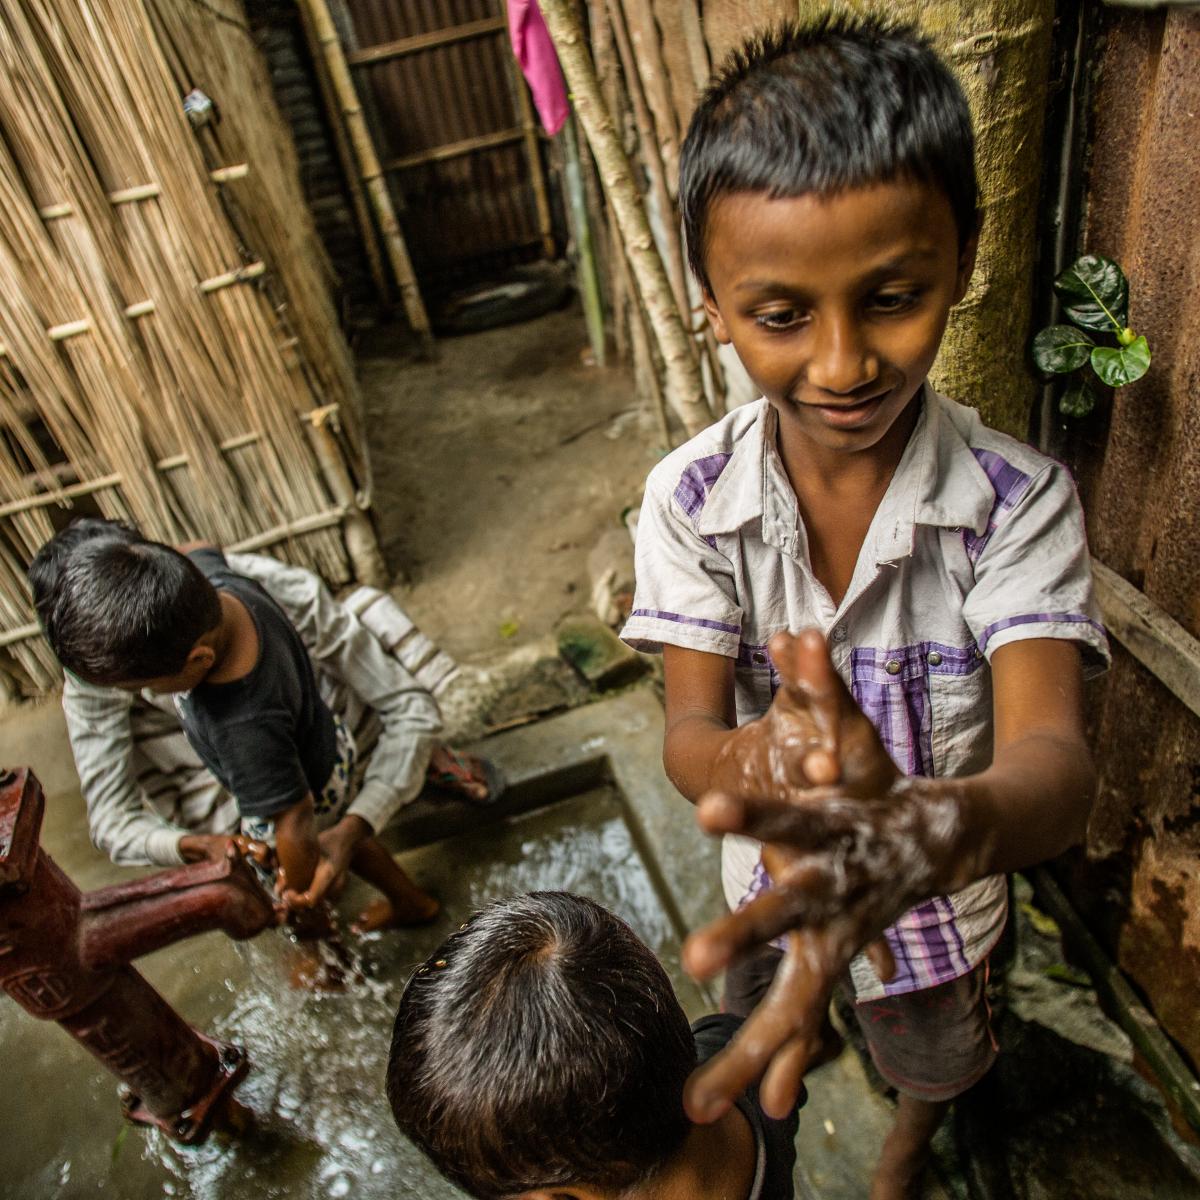 Children washing their hands.